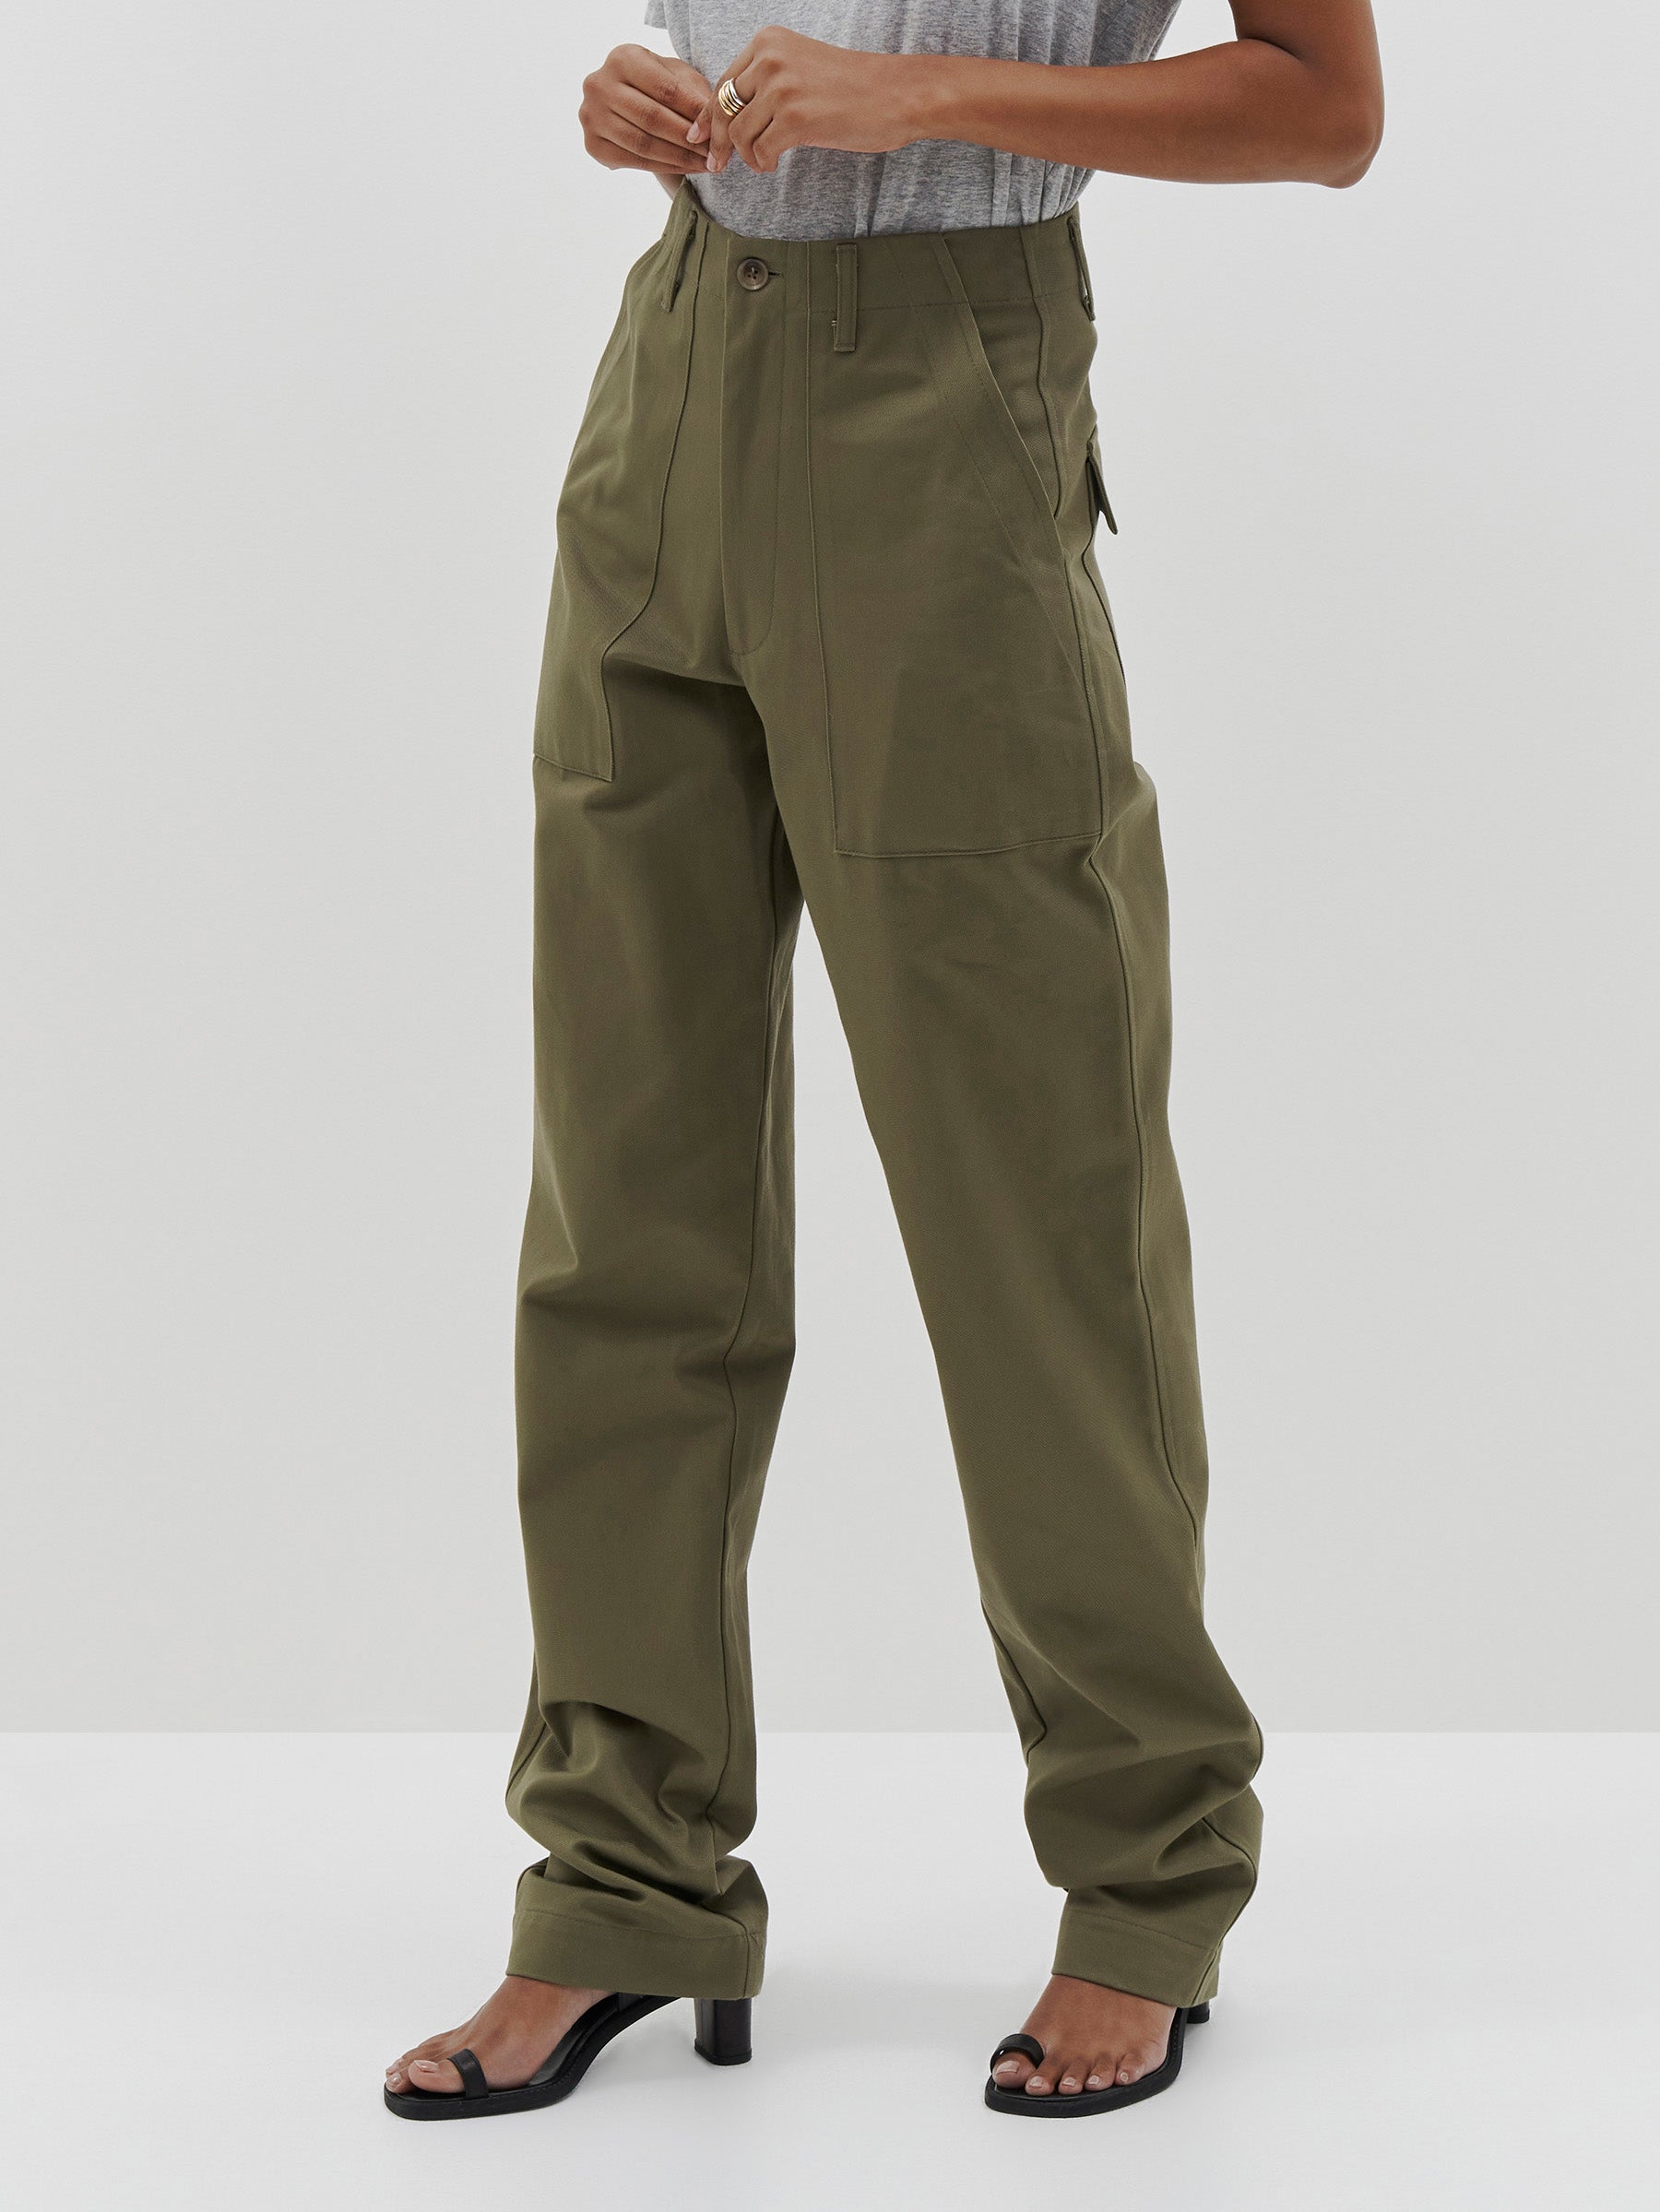 Military Tactical Pants For Men Multi-pocket Loose Cotton Size 28-42 |  Sadoun.com